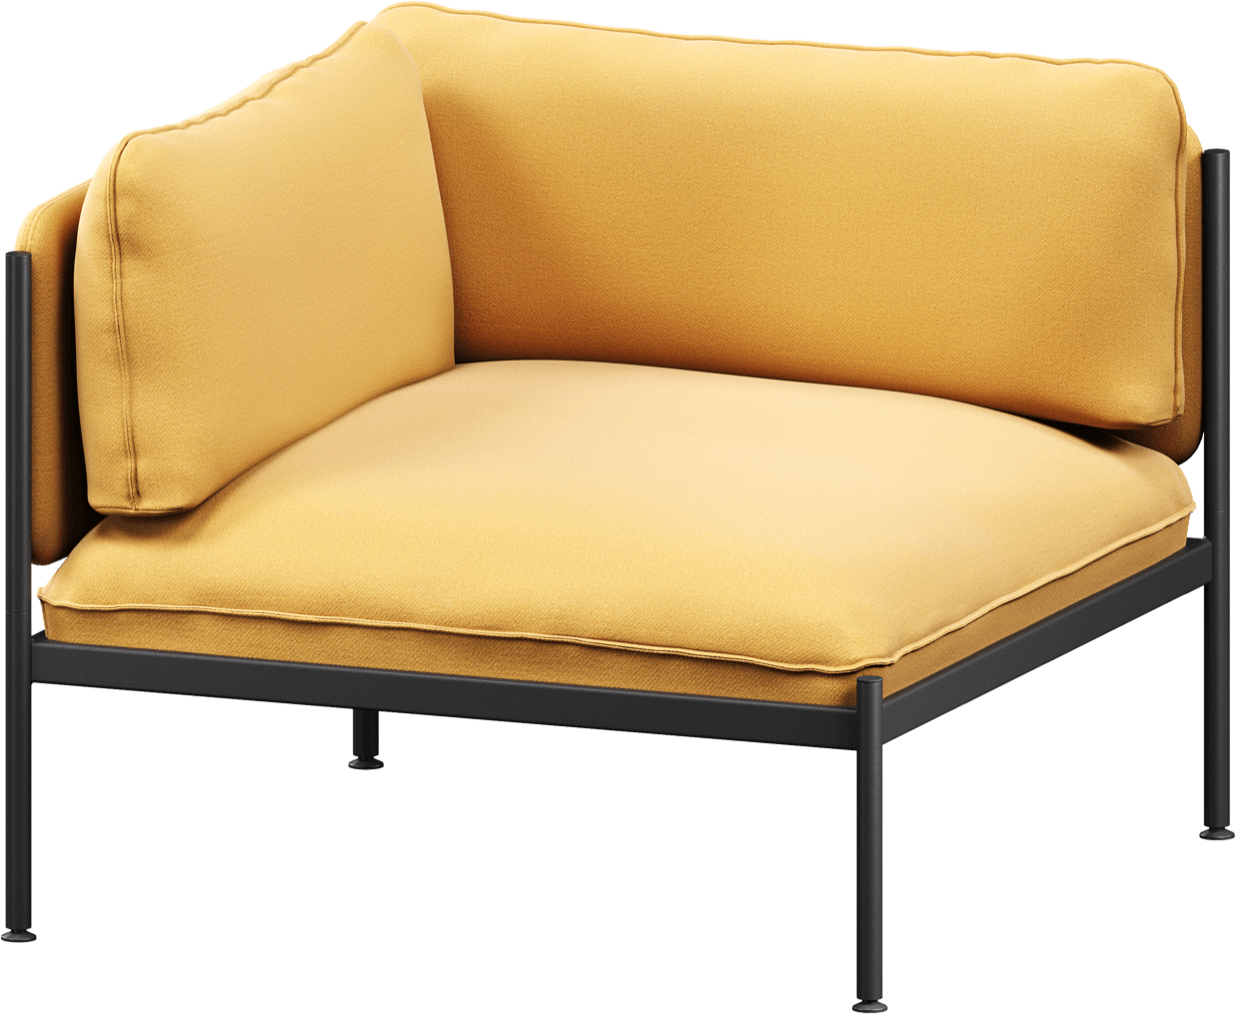 Toom Modular Eck-Sessel in Yellow Ochre präsentiert im Onlineshop von KAQTU Design AG. Sessel mit Armlehnen ist von Noo.ma